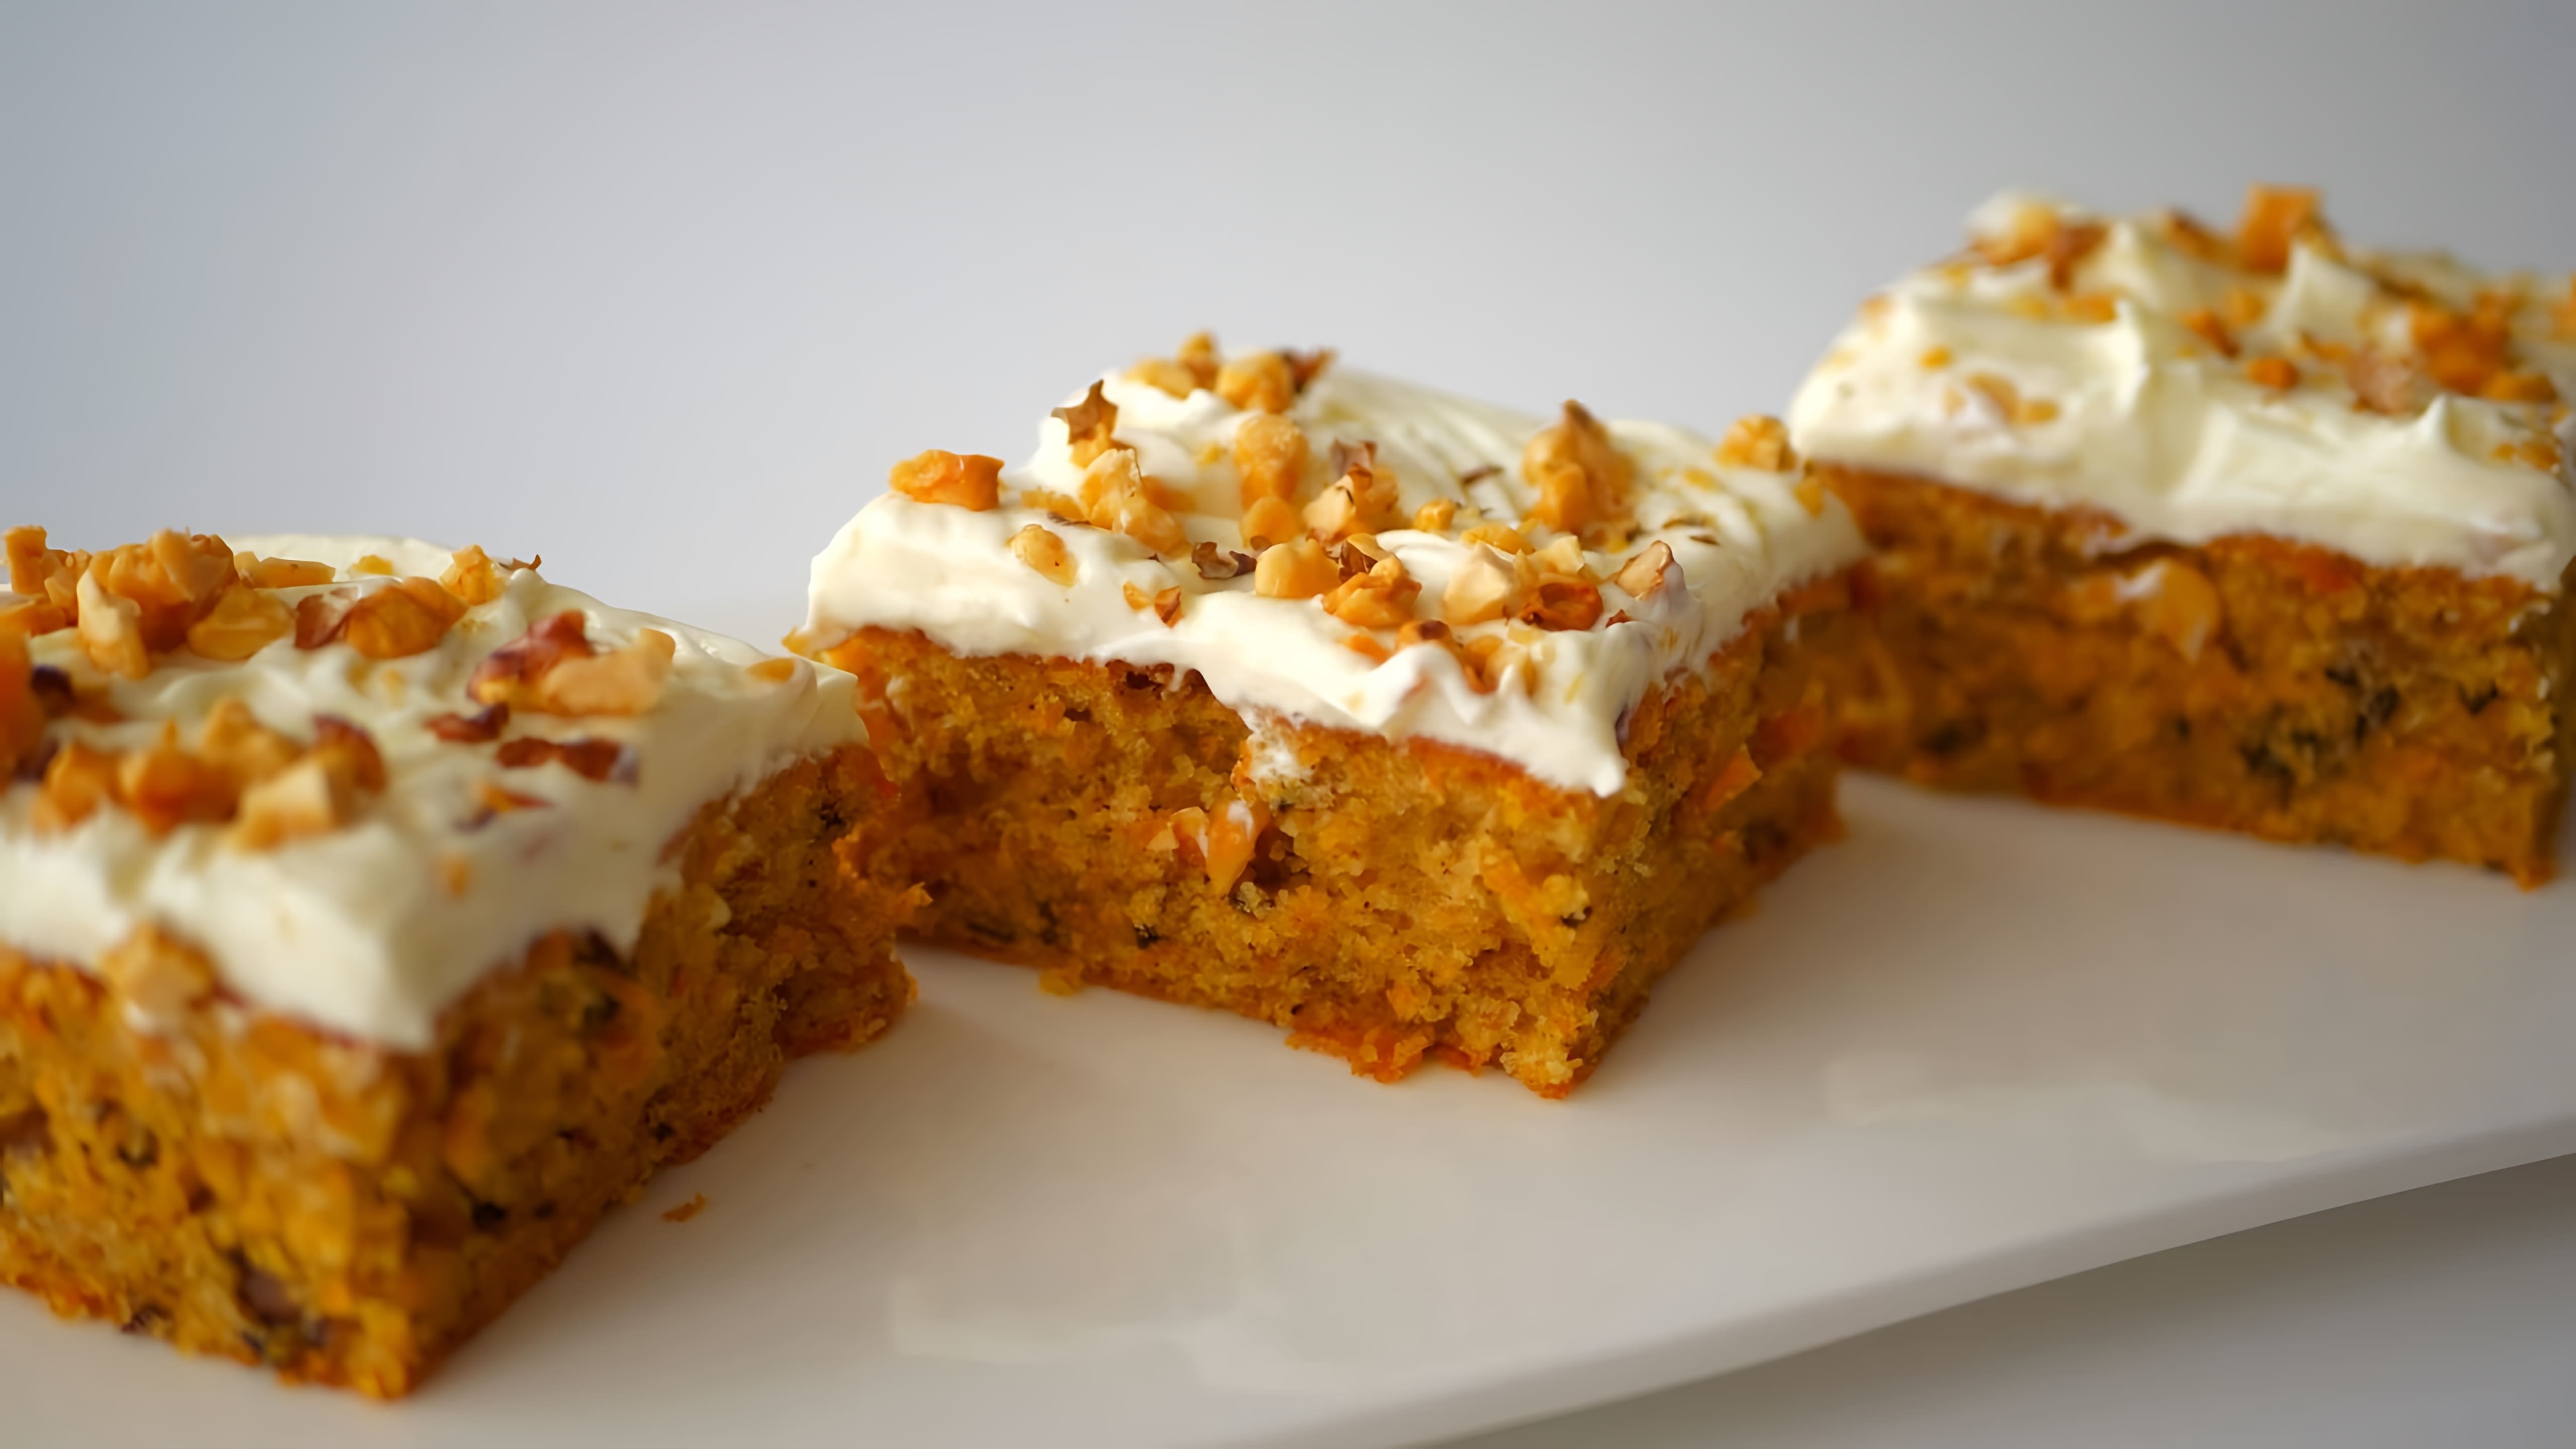 Идеальный пирог "Осенний" с тыквой или морковью - это видео-ролик, который демонстрирует процесс приготовления вкусного и ароматного пирога в осенний период